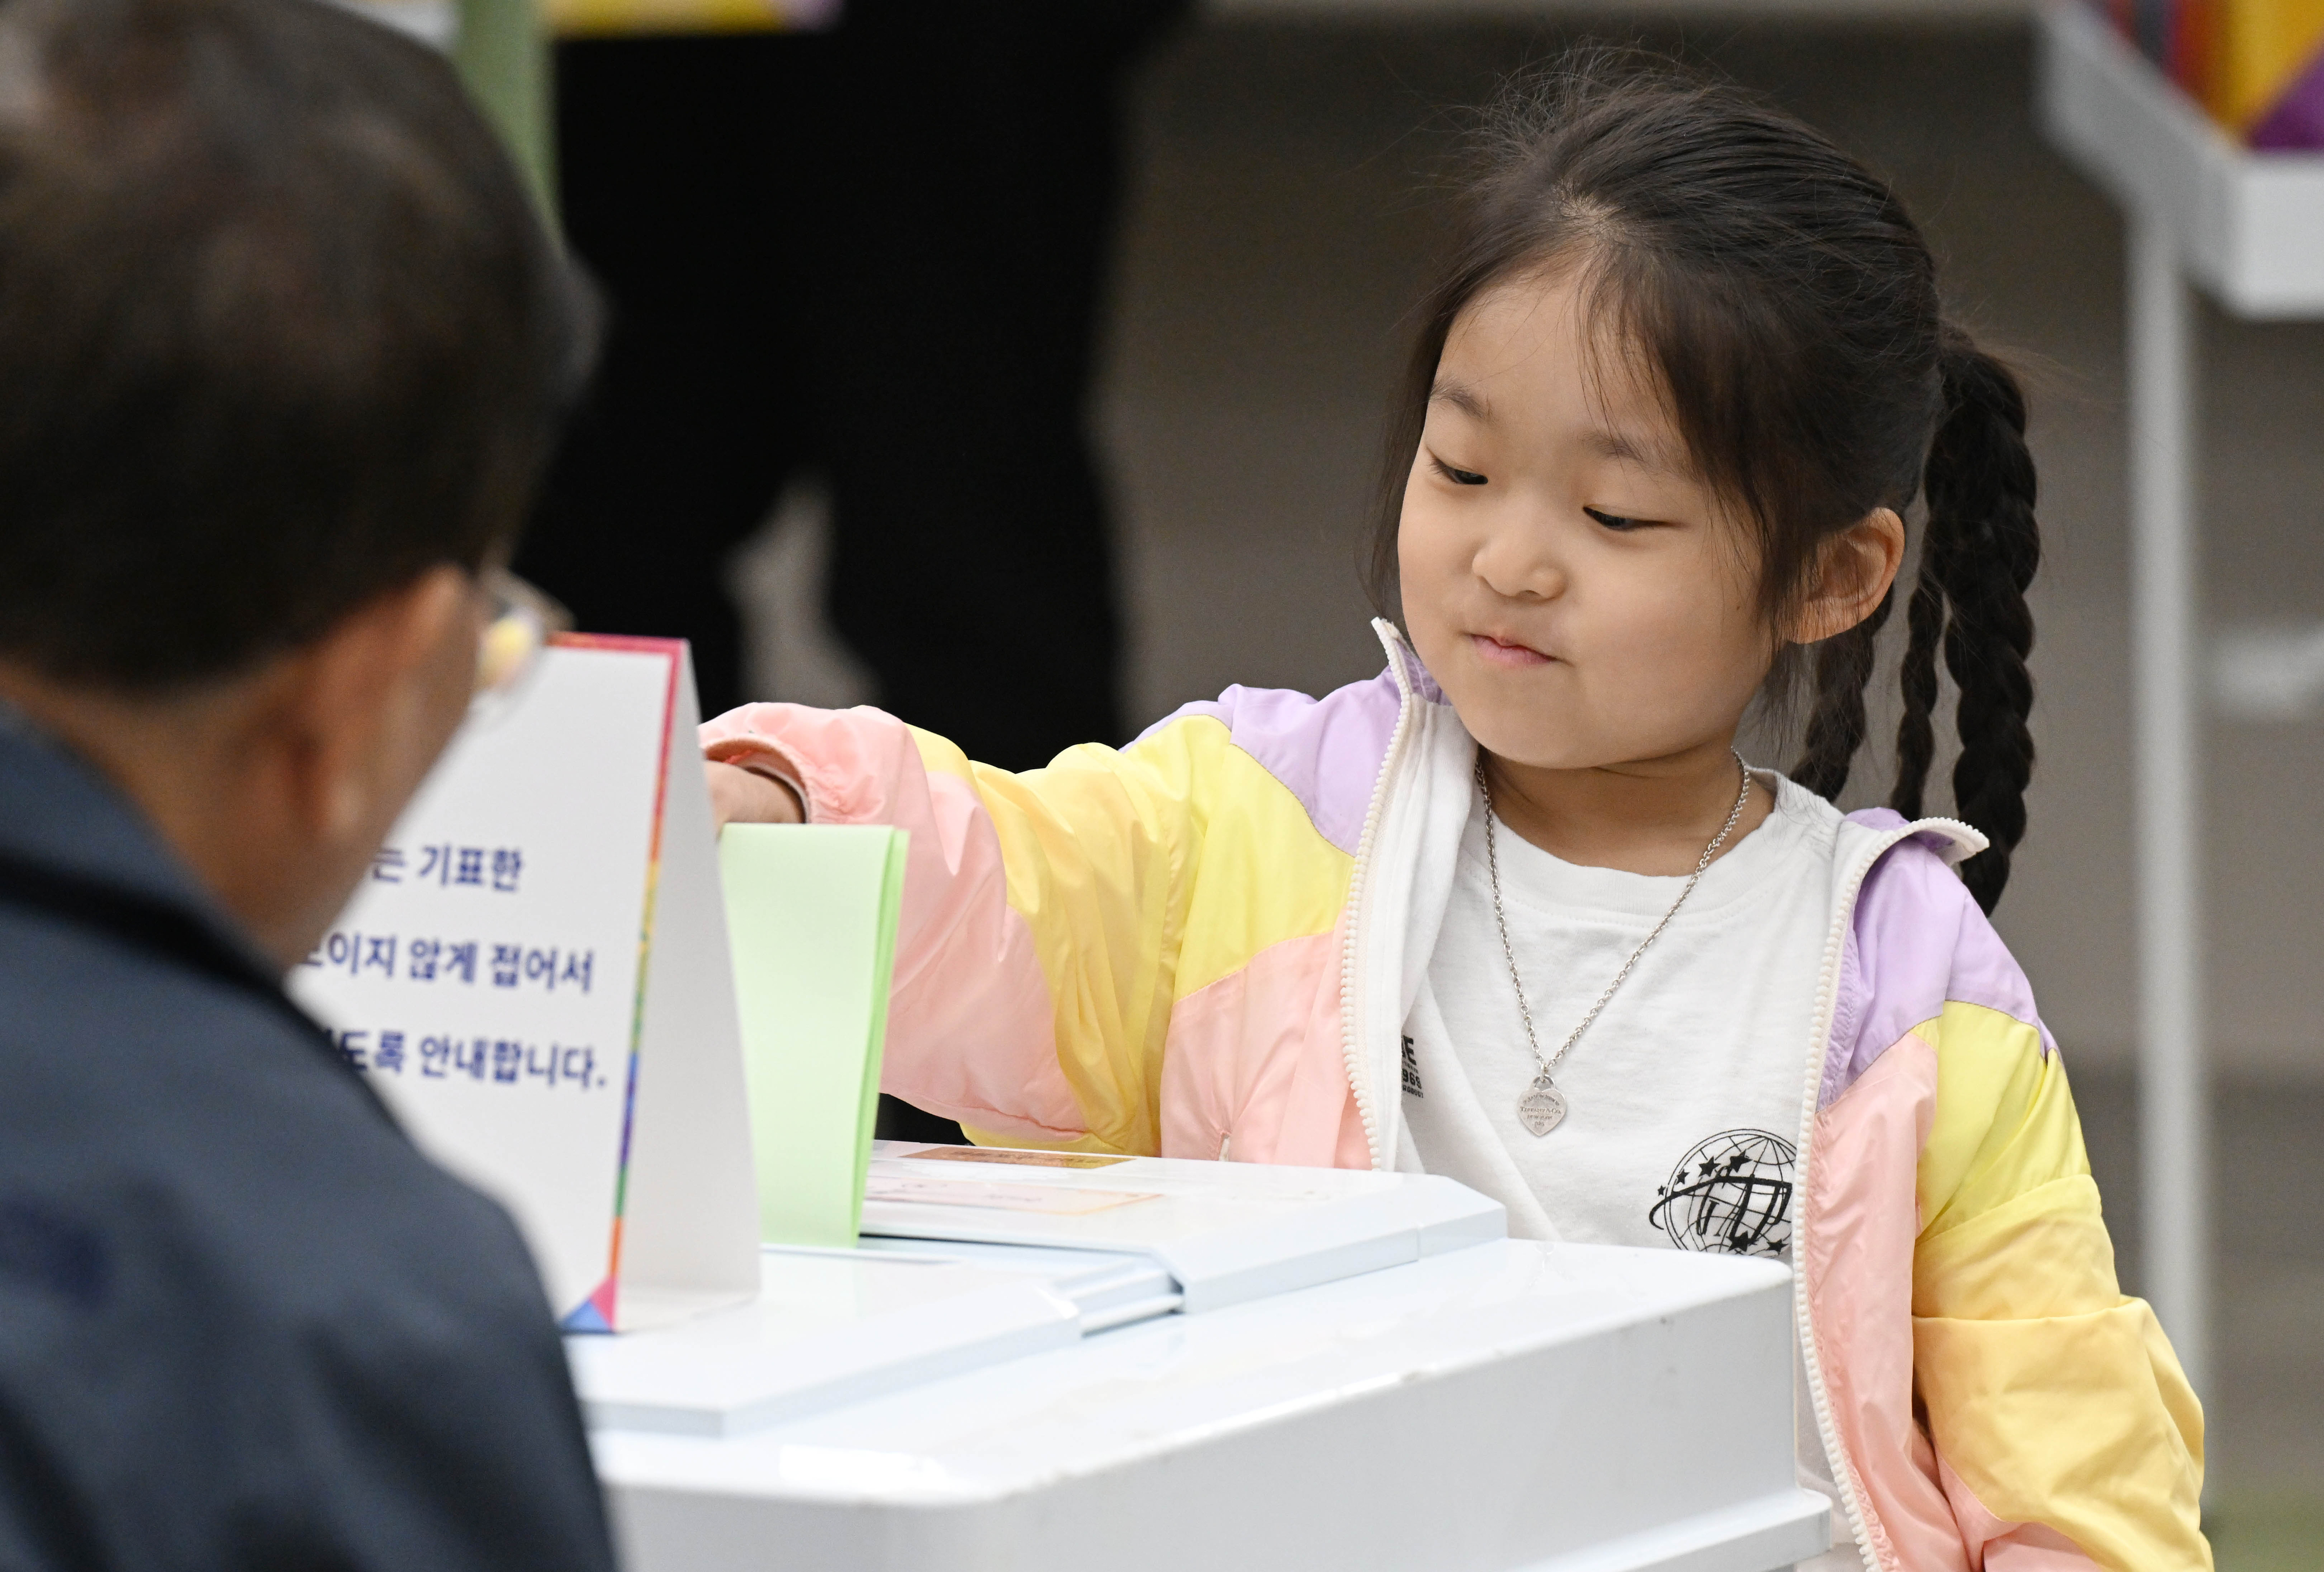 제22대 국회의원선거 투표일인 10일 서울 영등포구 여의도중학교에 마련된 투표소에서 아이가 부모의 투표용지를 대신 넣고 있다. 2024.4.10 홍윤기 기자